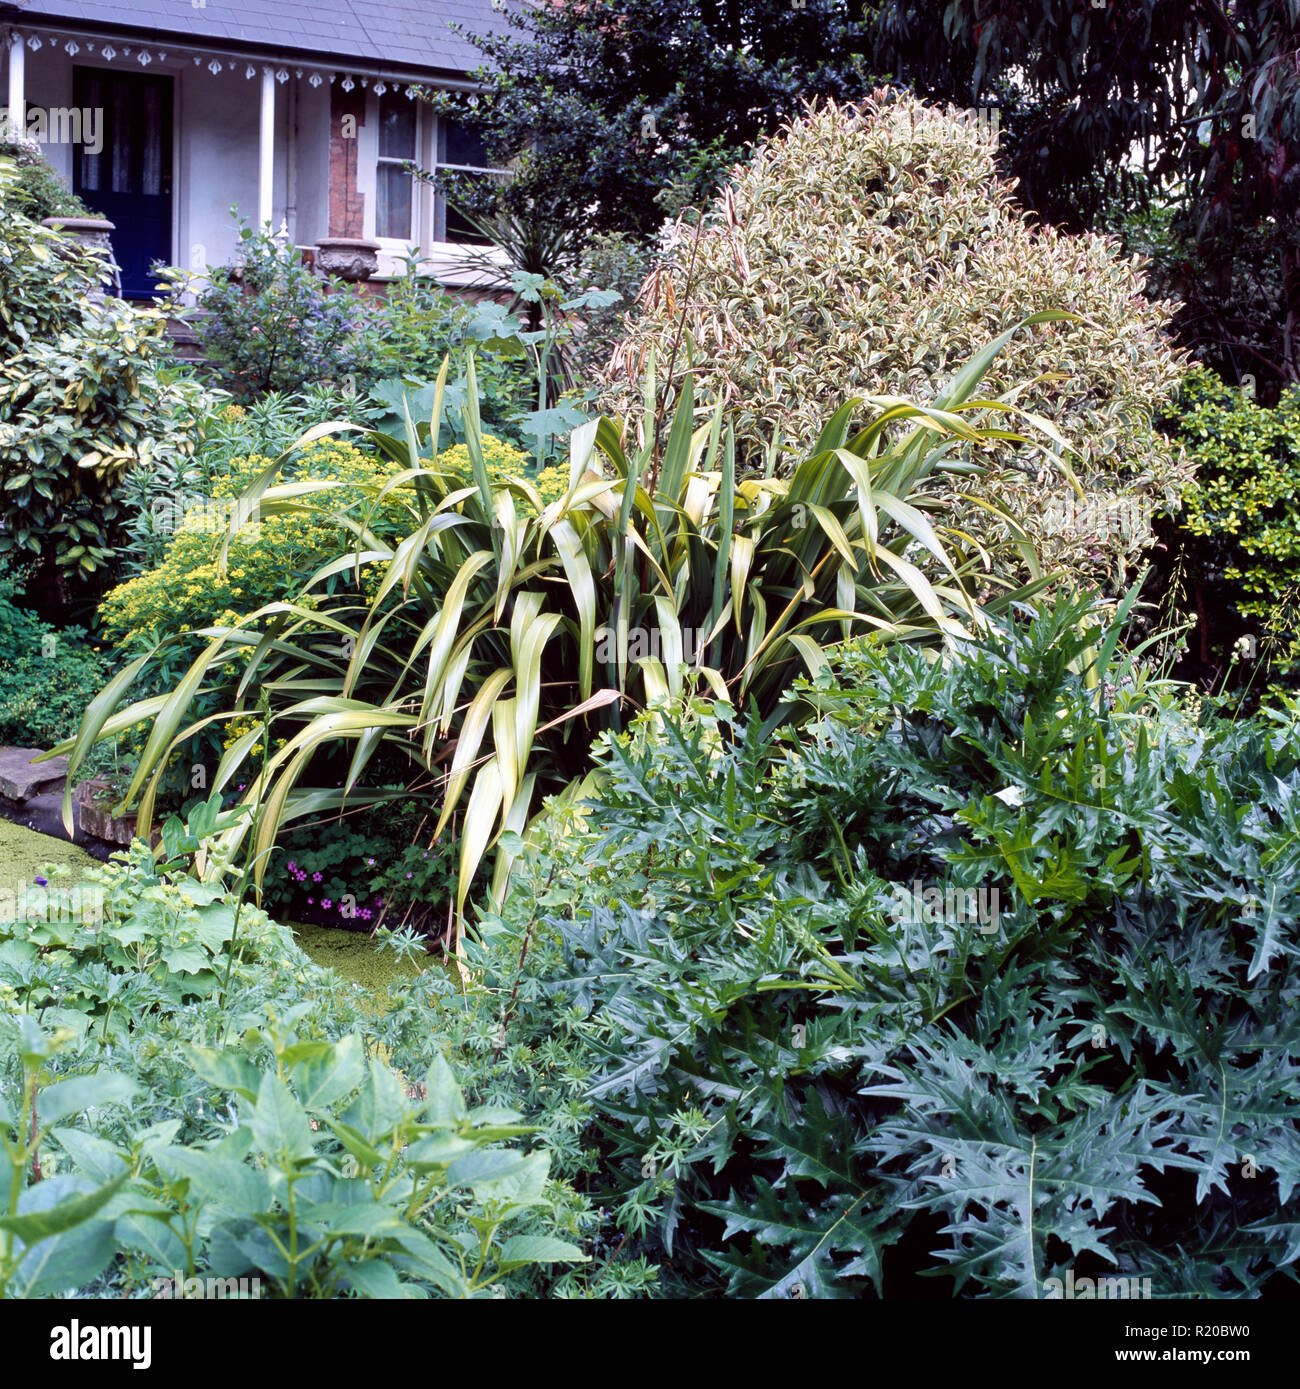 Acanthus and green shrubs in garden border Stock Photo